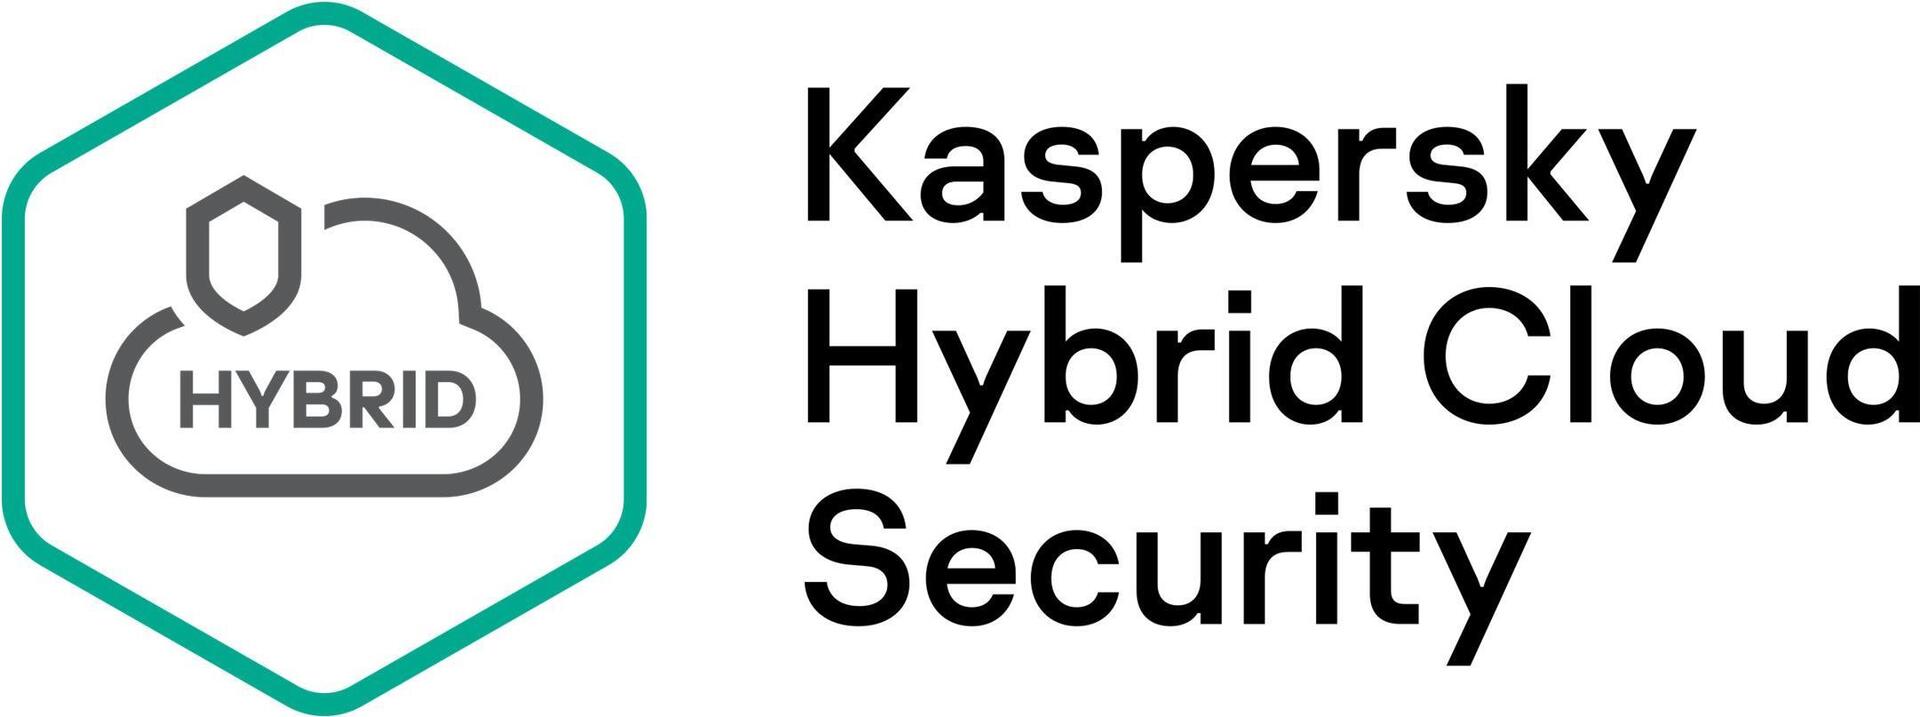 Kaspersky Hybrid Cloud Security (KL4554XADD9)